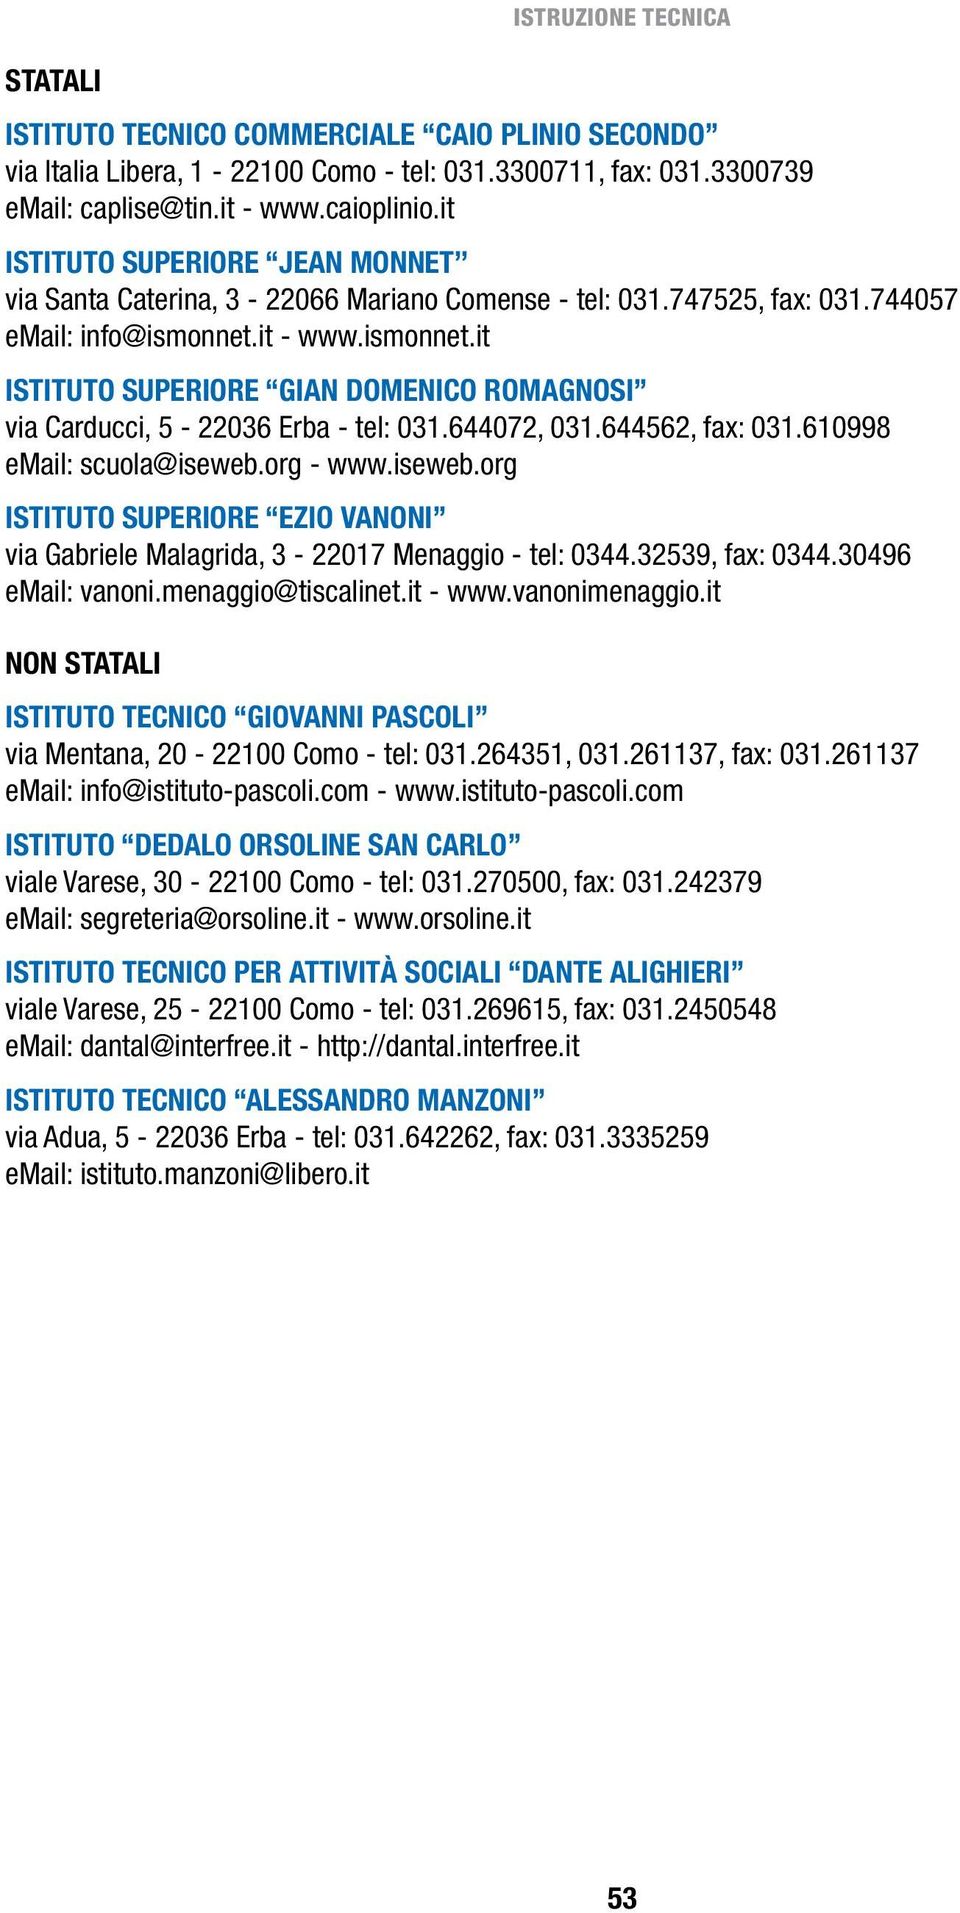 it - www.ismonnet.it ISTITUTO SUPERIORE GIAN DOMENICO ROMAGNOSI via Carducci, 5-22036 Erba - tel: 031.644072, 031.644562, fax: 031.610998 email: scuola@iseweb.